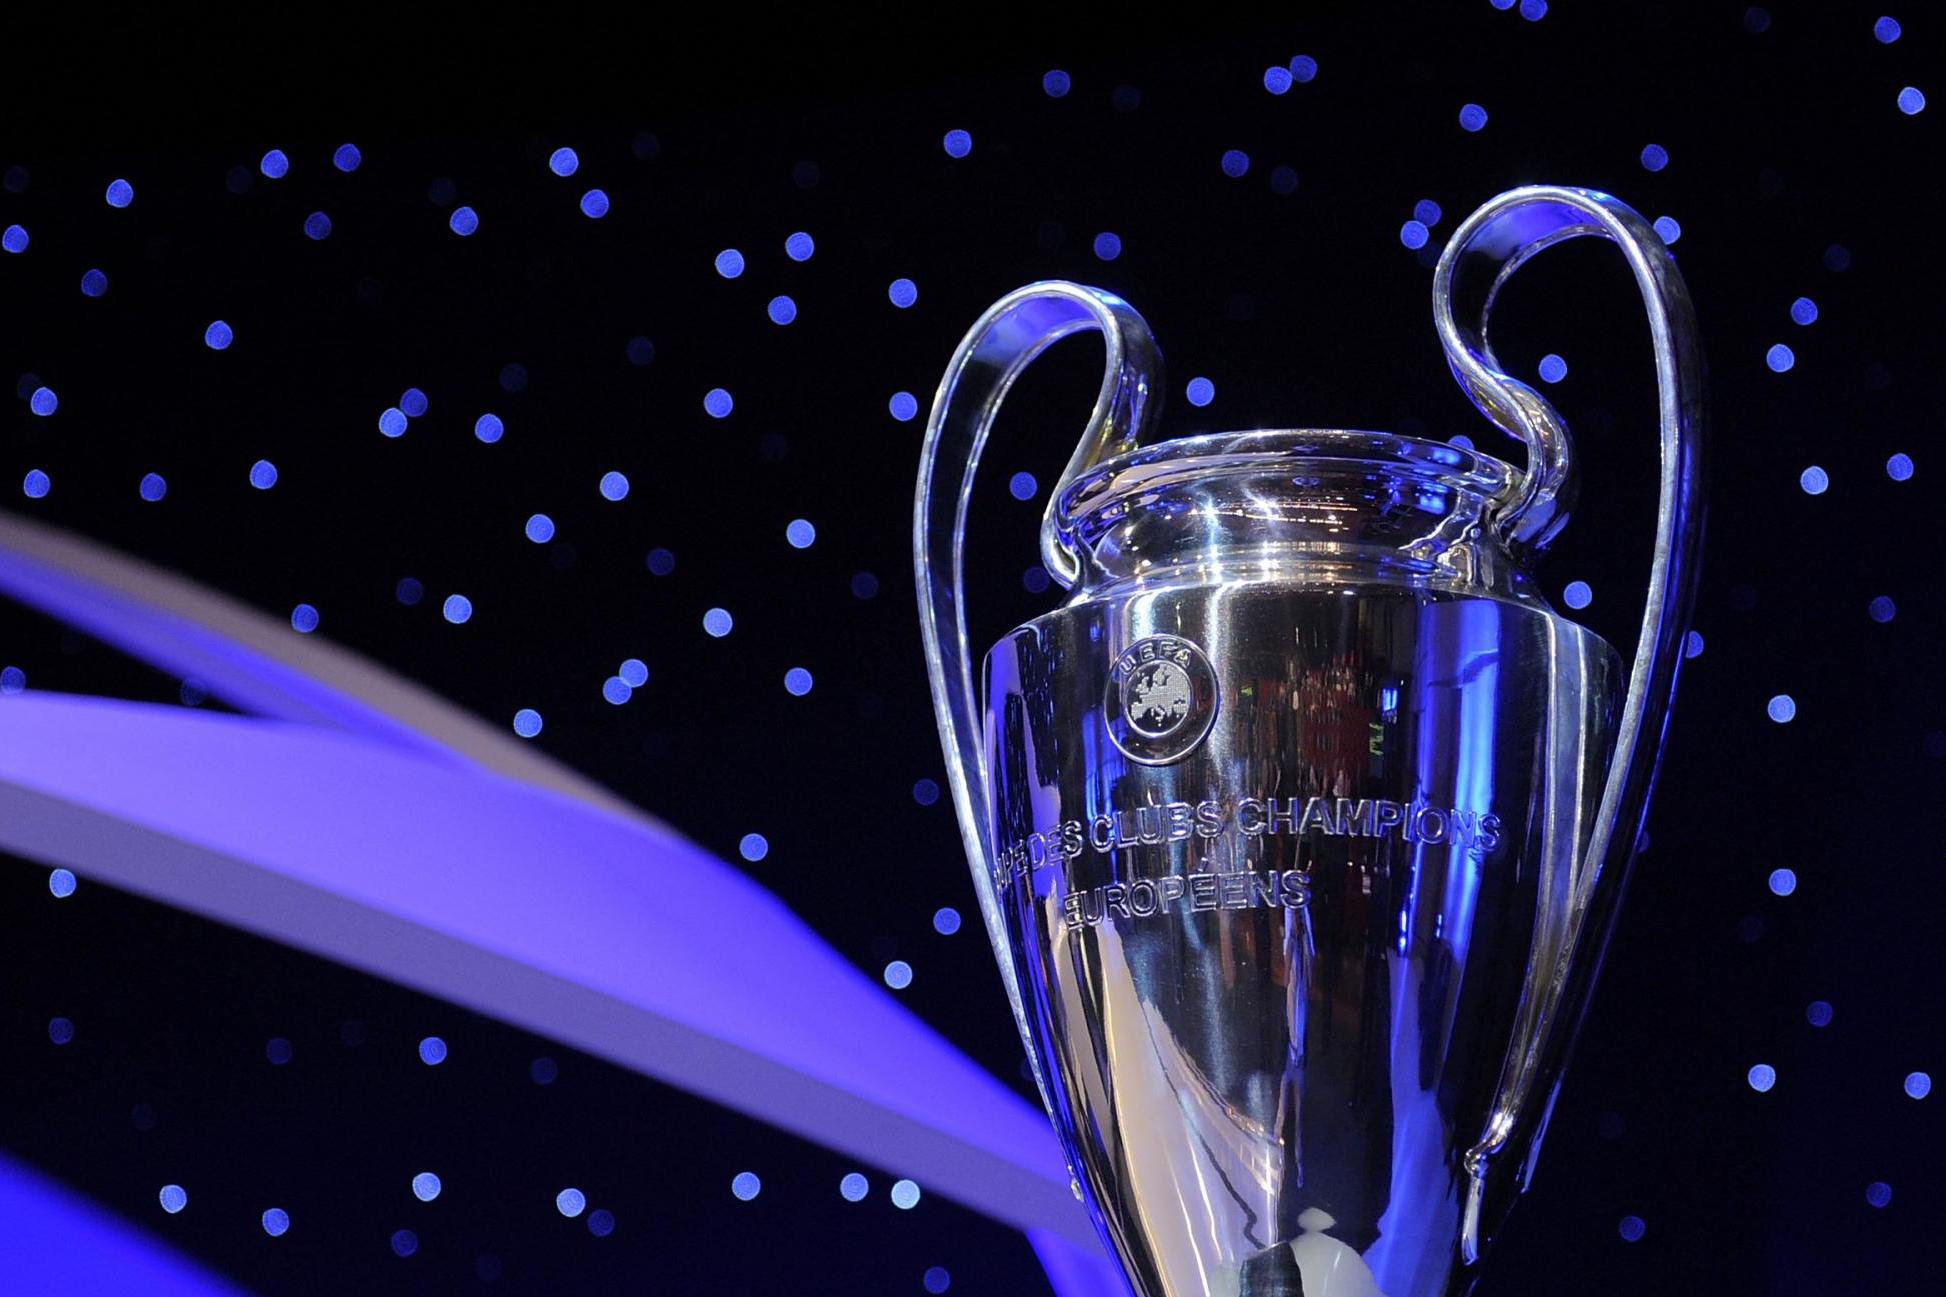 Οι οκτώ όμιλοι του Champions League για τη σεζόν 2019-20